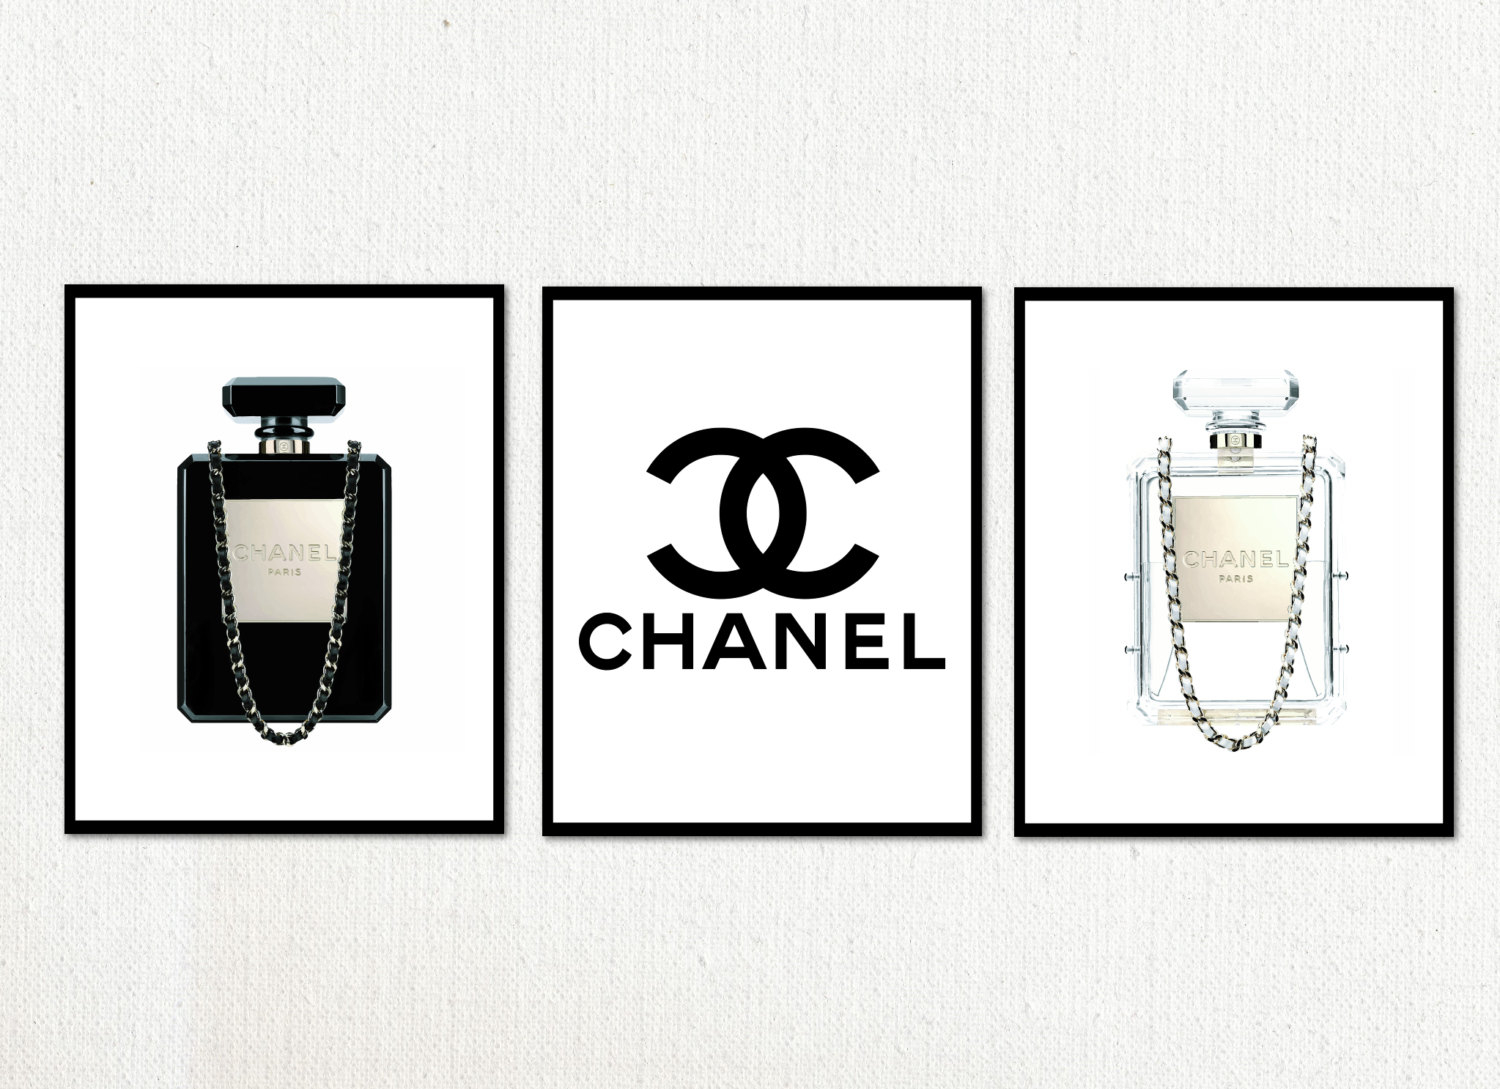 Printable Chanel Logos